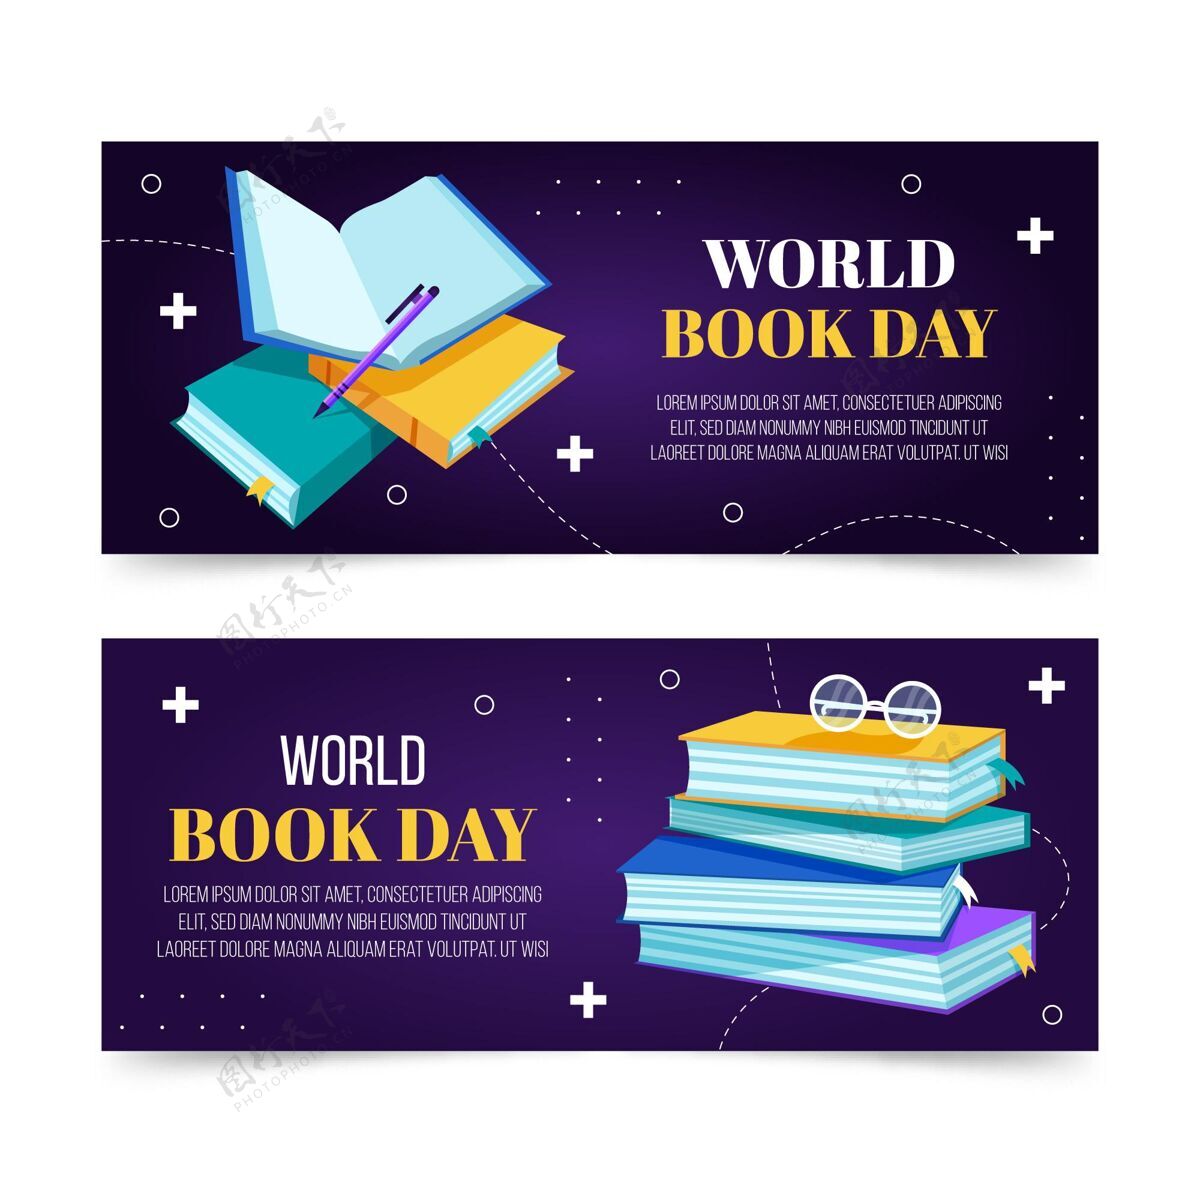 世界图书日平面世界图书日横幅集图书日横幅模板平面设计